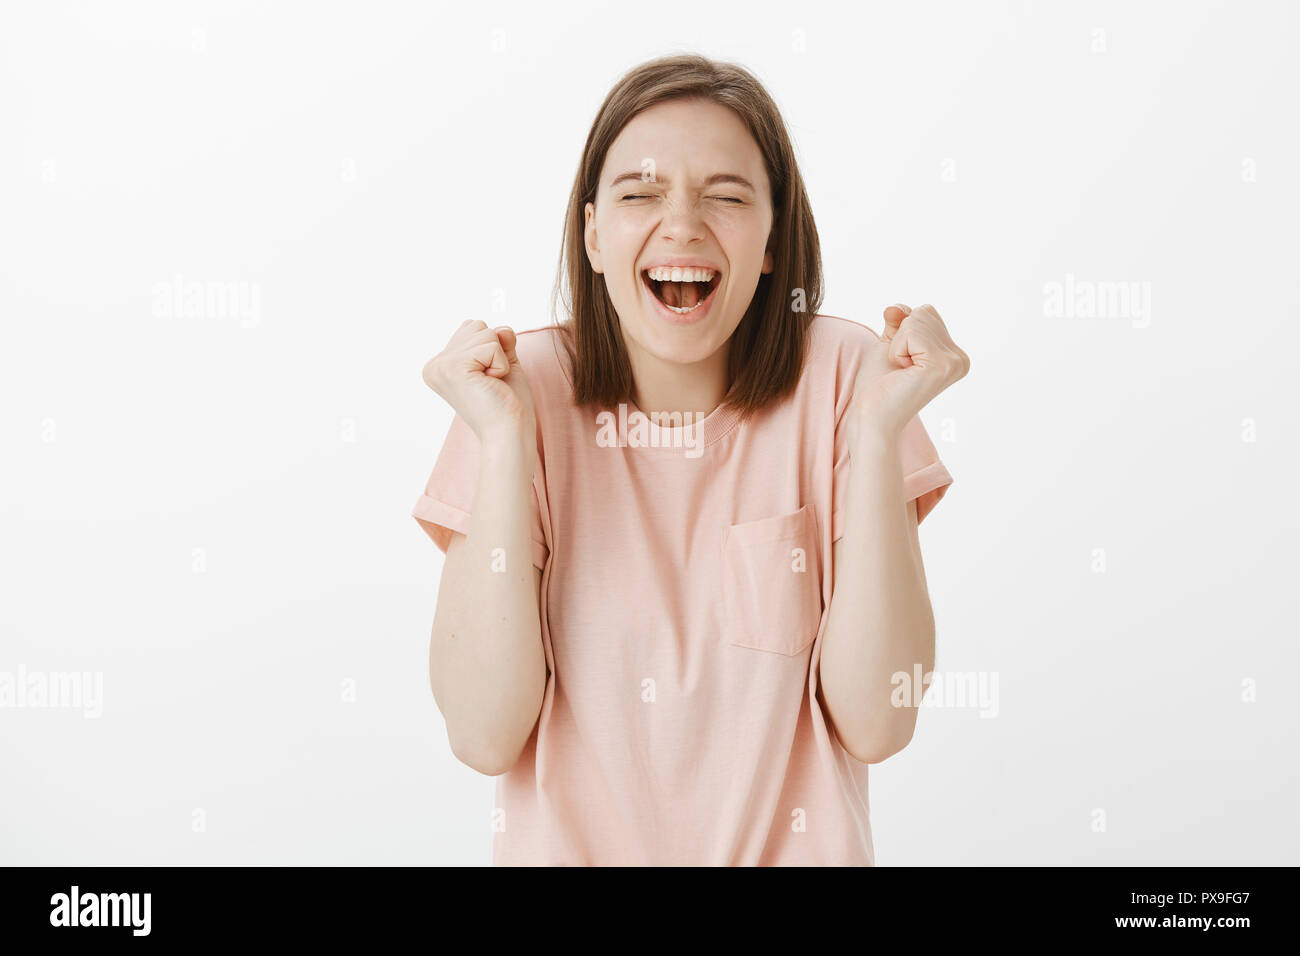 Oui J'ai gagné. Portrait de triomphant heureux et insouciant girl in pink t-shirt, criant avec large sourire et ferma les yeux de bonheur, gesticulant, poing levé célébrant la victoire ou la réussite Banque D'Images